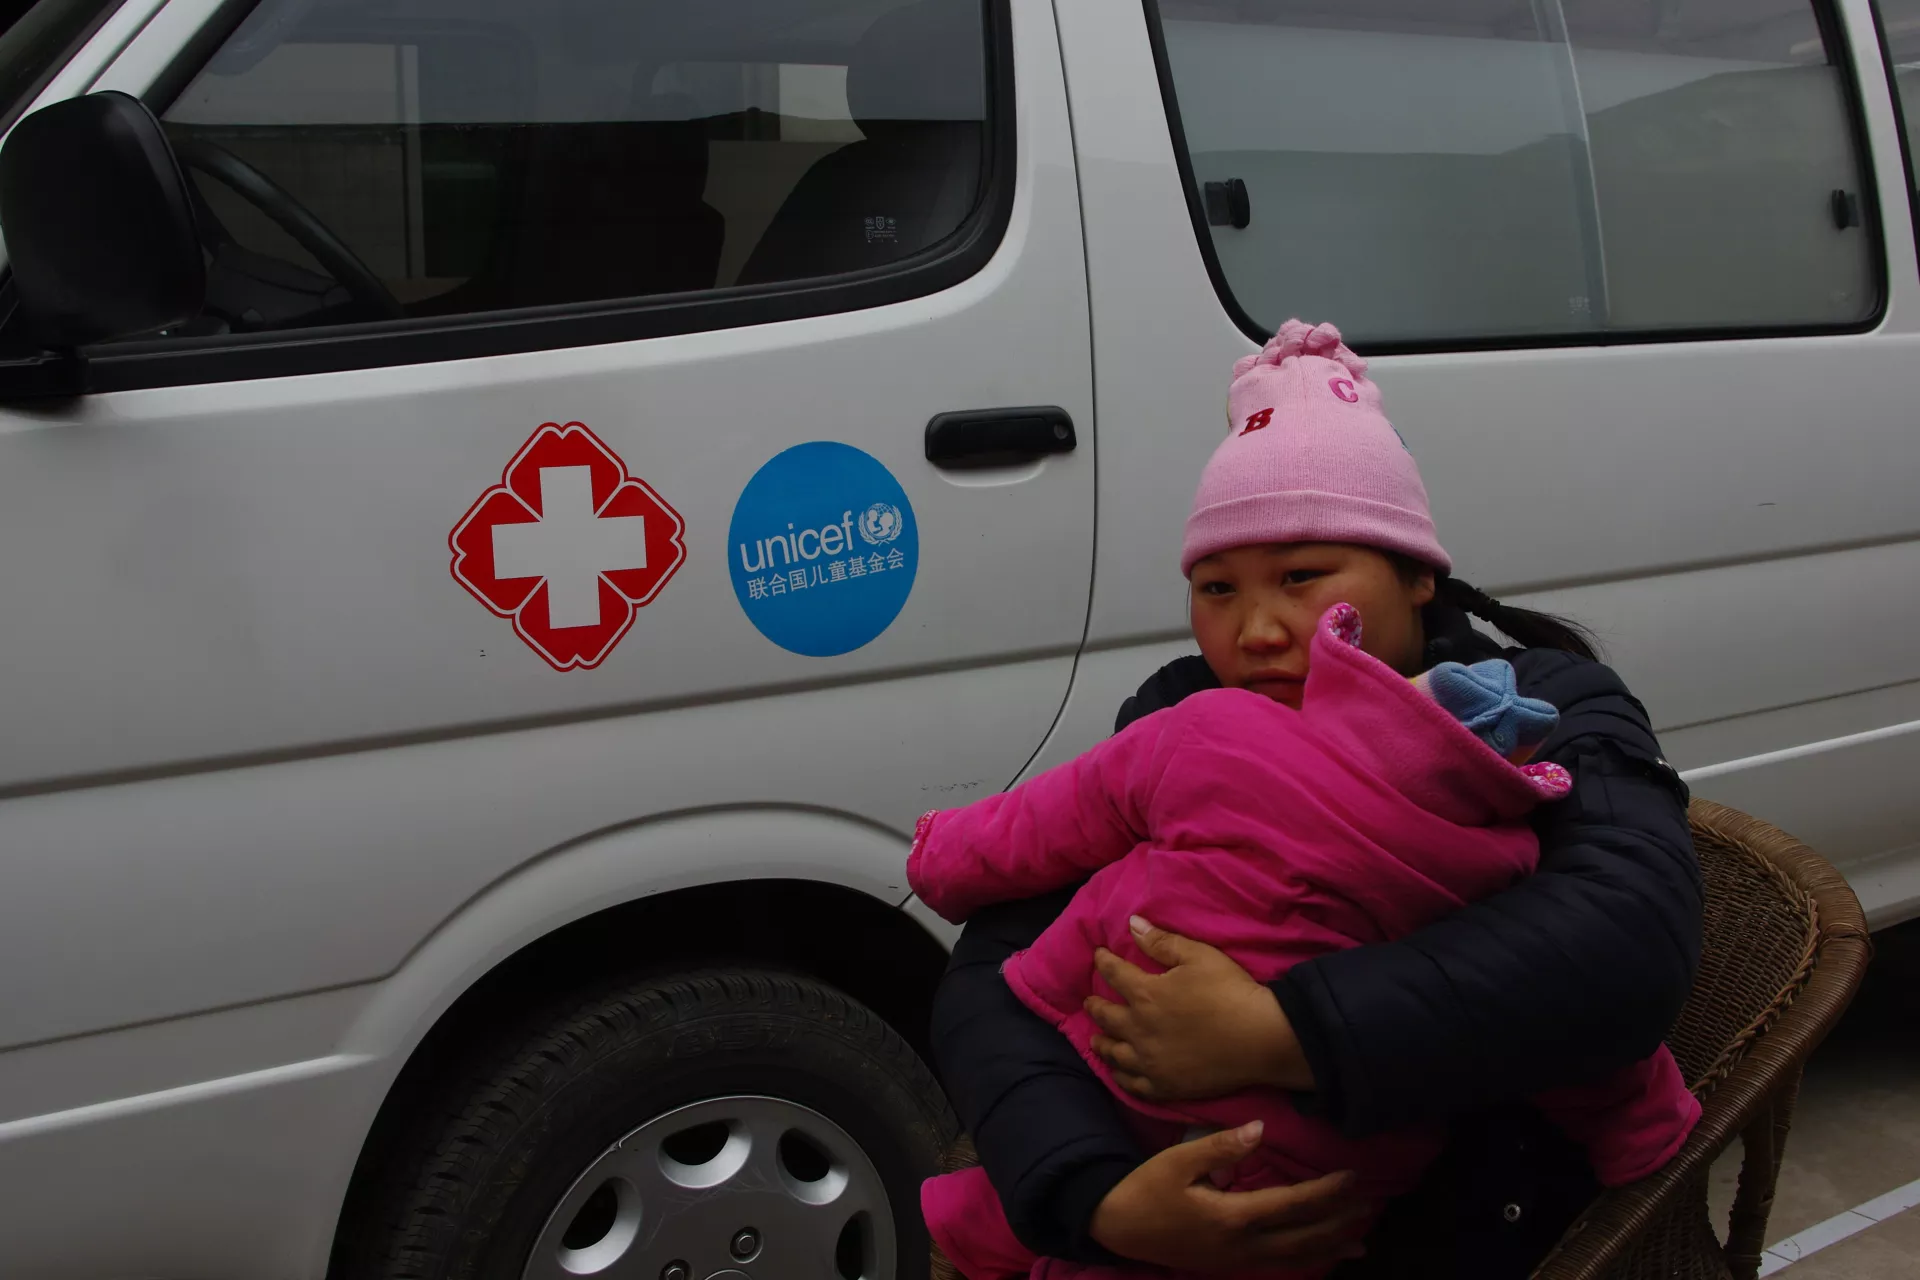 刘菊抱着女儿坐在救护车前。联合国儿童基金会为汶川地震灾区提供了大量的药品和医疗设备。